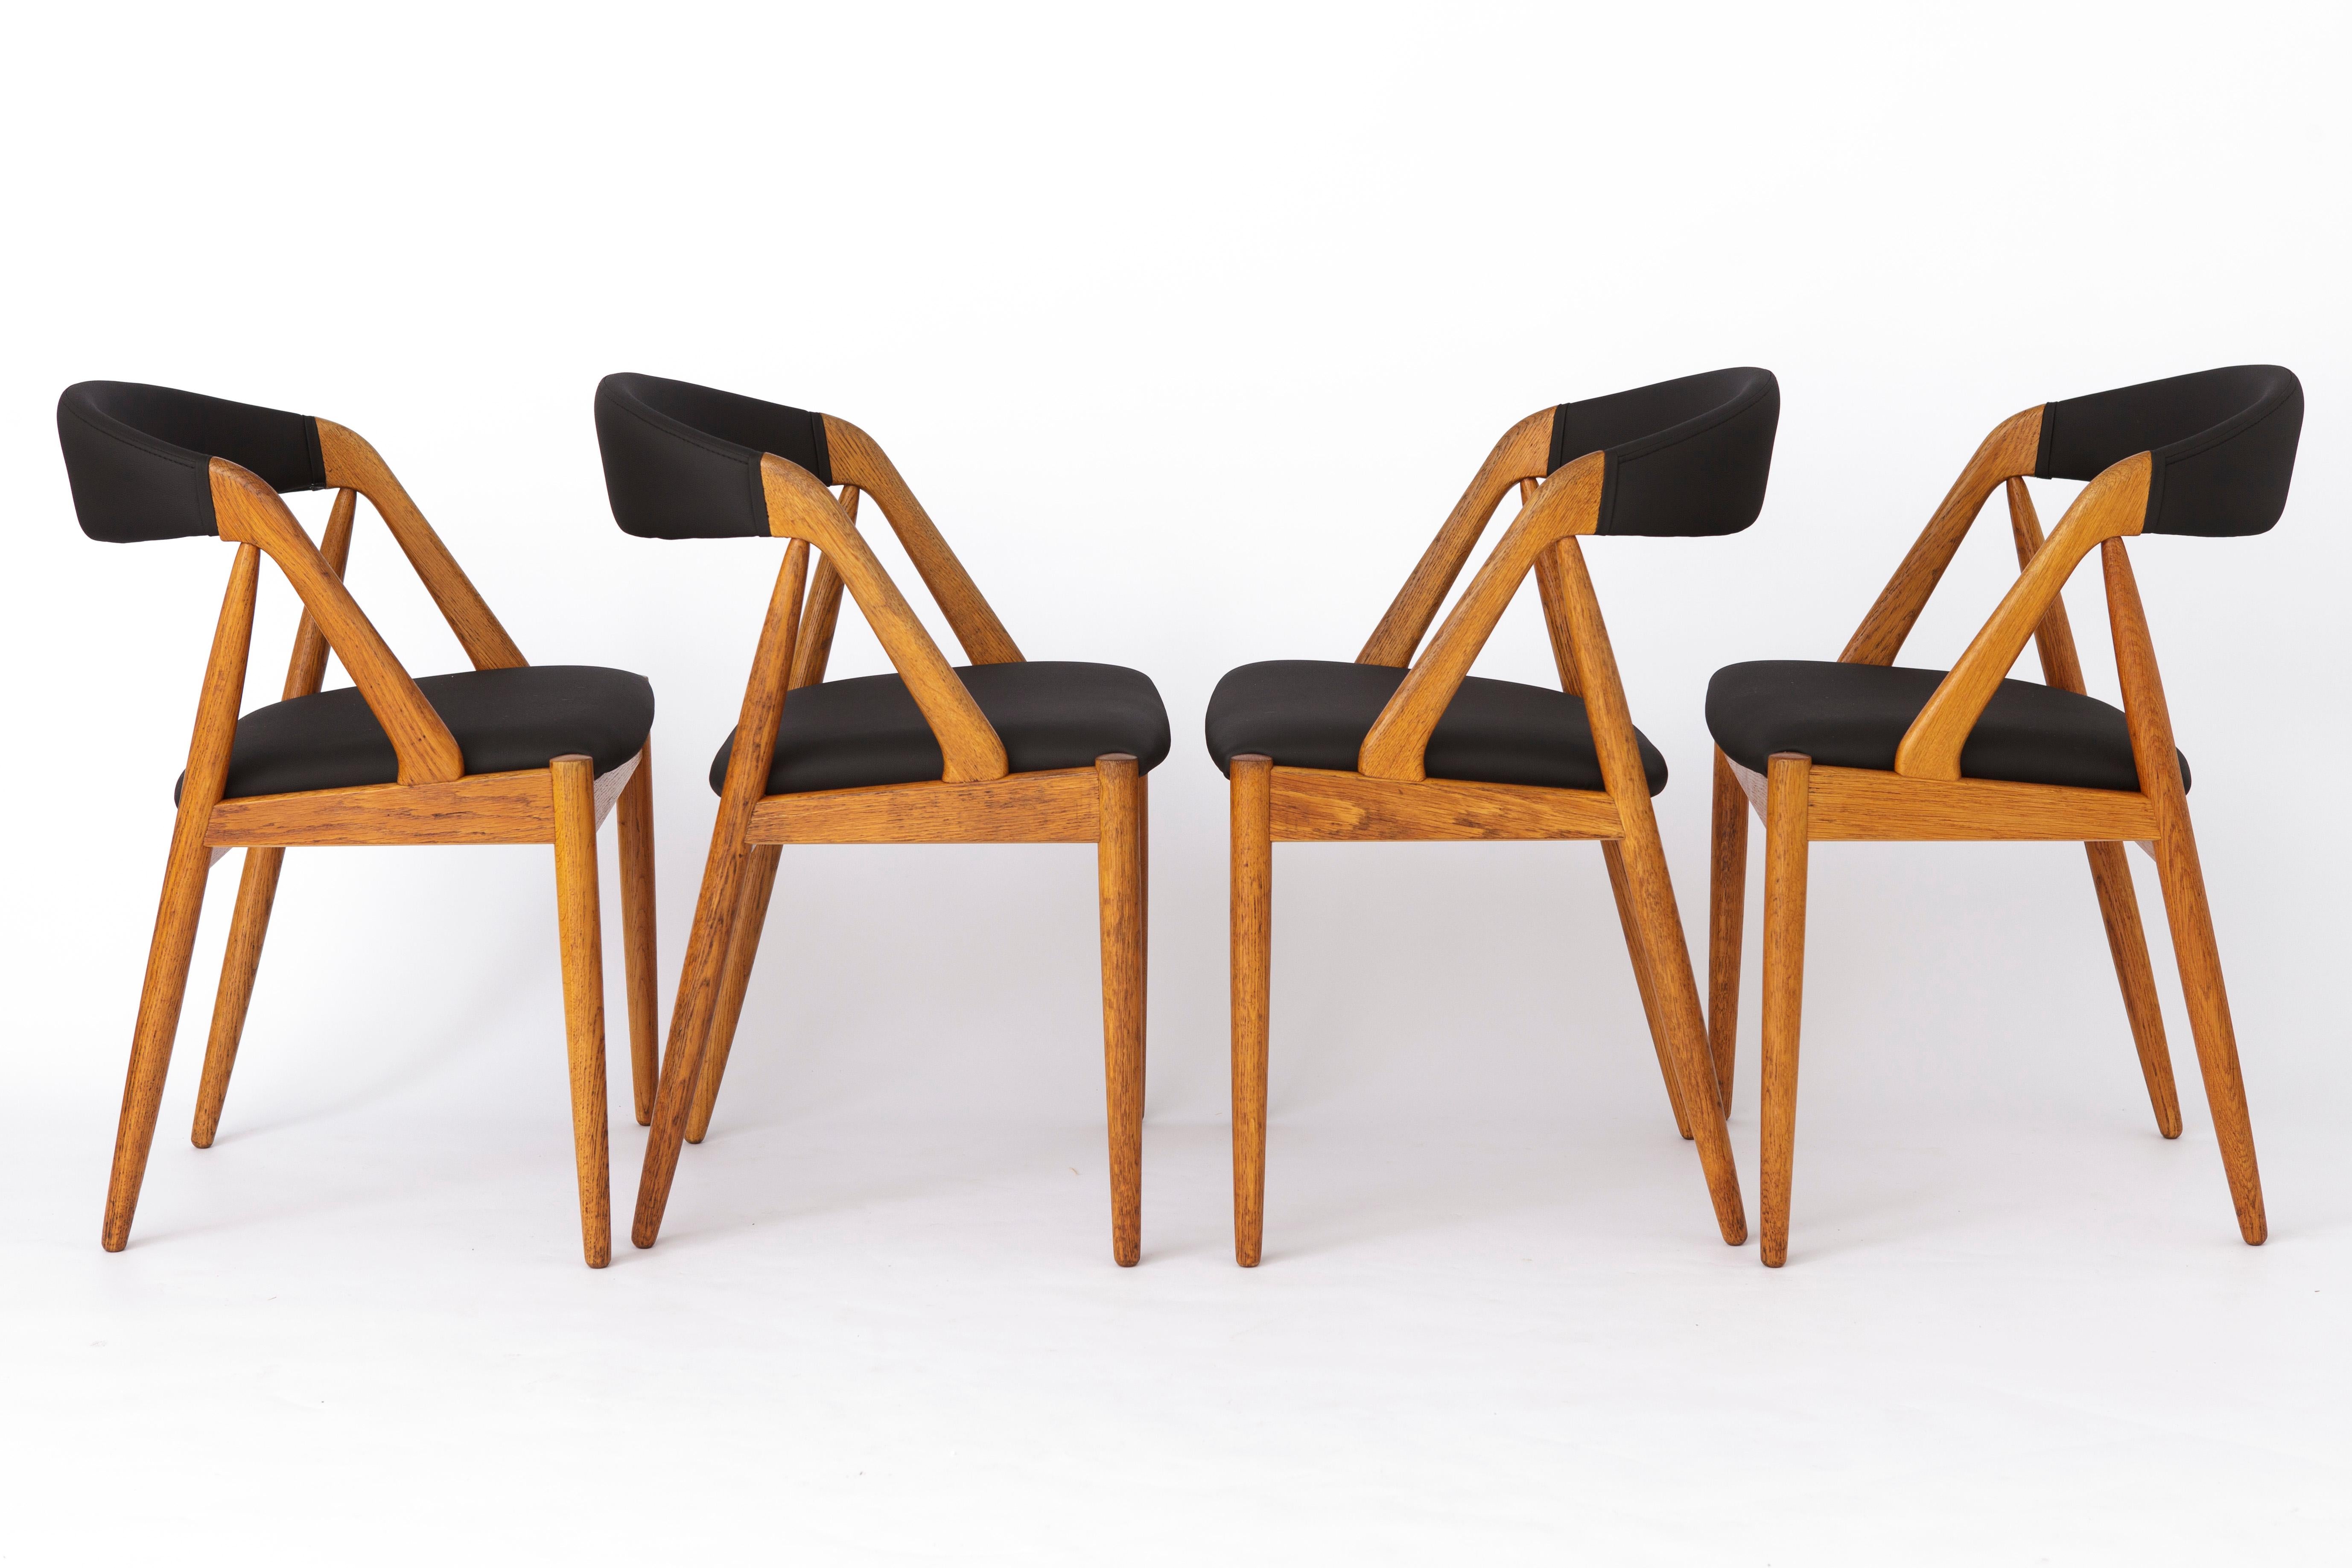 4 Stühle im Vintage-Stil, entworfen von Kai Kristiansen.
Modell: 31 aus den 1960er Jahren. 
Der angezeigte Preis gilt für einen Satz von 4 Stück. 

In sehr gutem Vintage-Zustand. Stabiler Stuhlrahmen aus Eiche. 
Aufgearbeitet und geölt. 
Sitz und